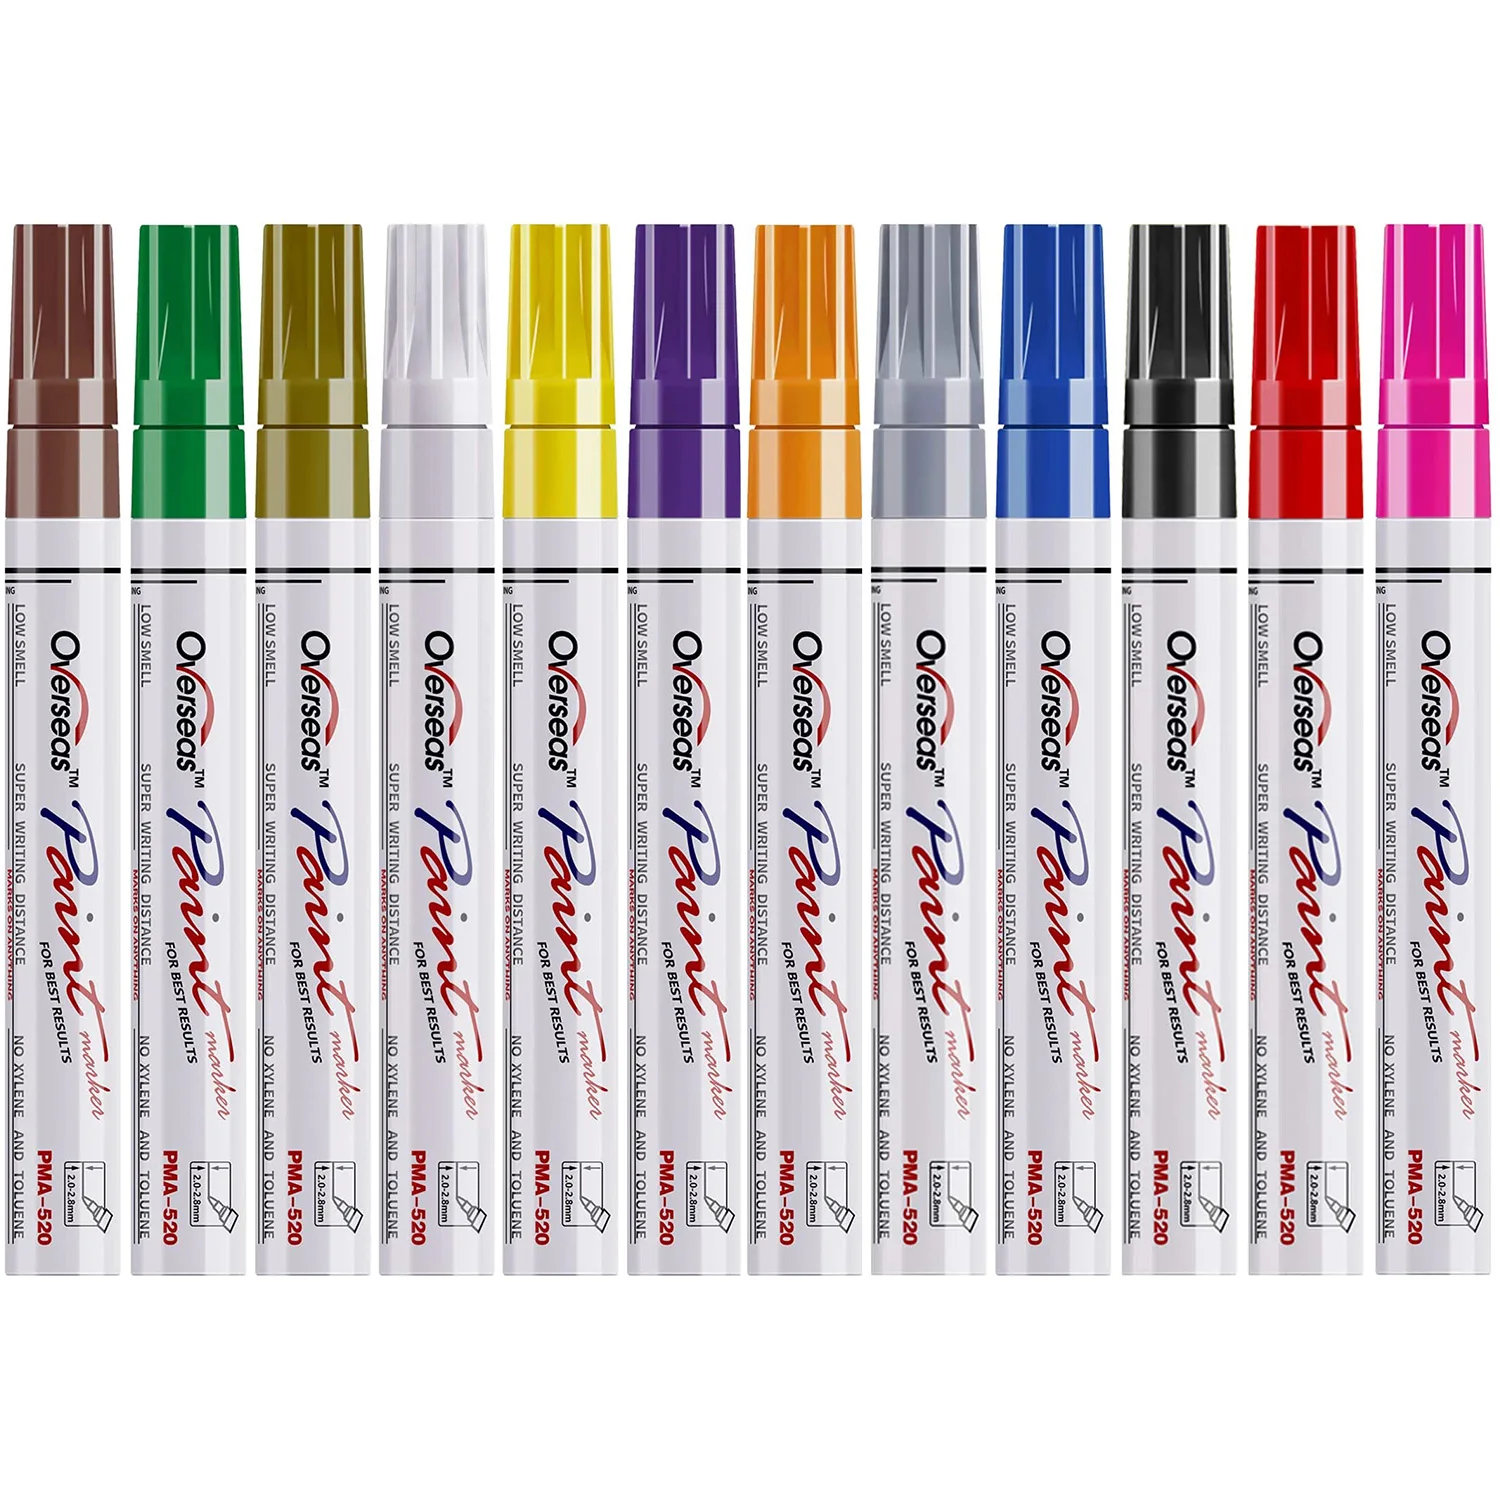 Ручки для перманентной краски, маркеры для краски из пластика, набор фломастеров на масляной основе 12 цветов, быстросохнущие и водонепроницаемые, Ручка для масляной краски